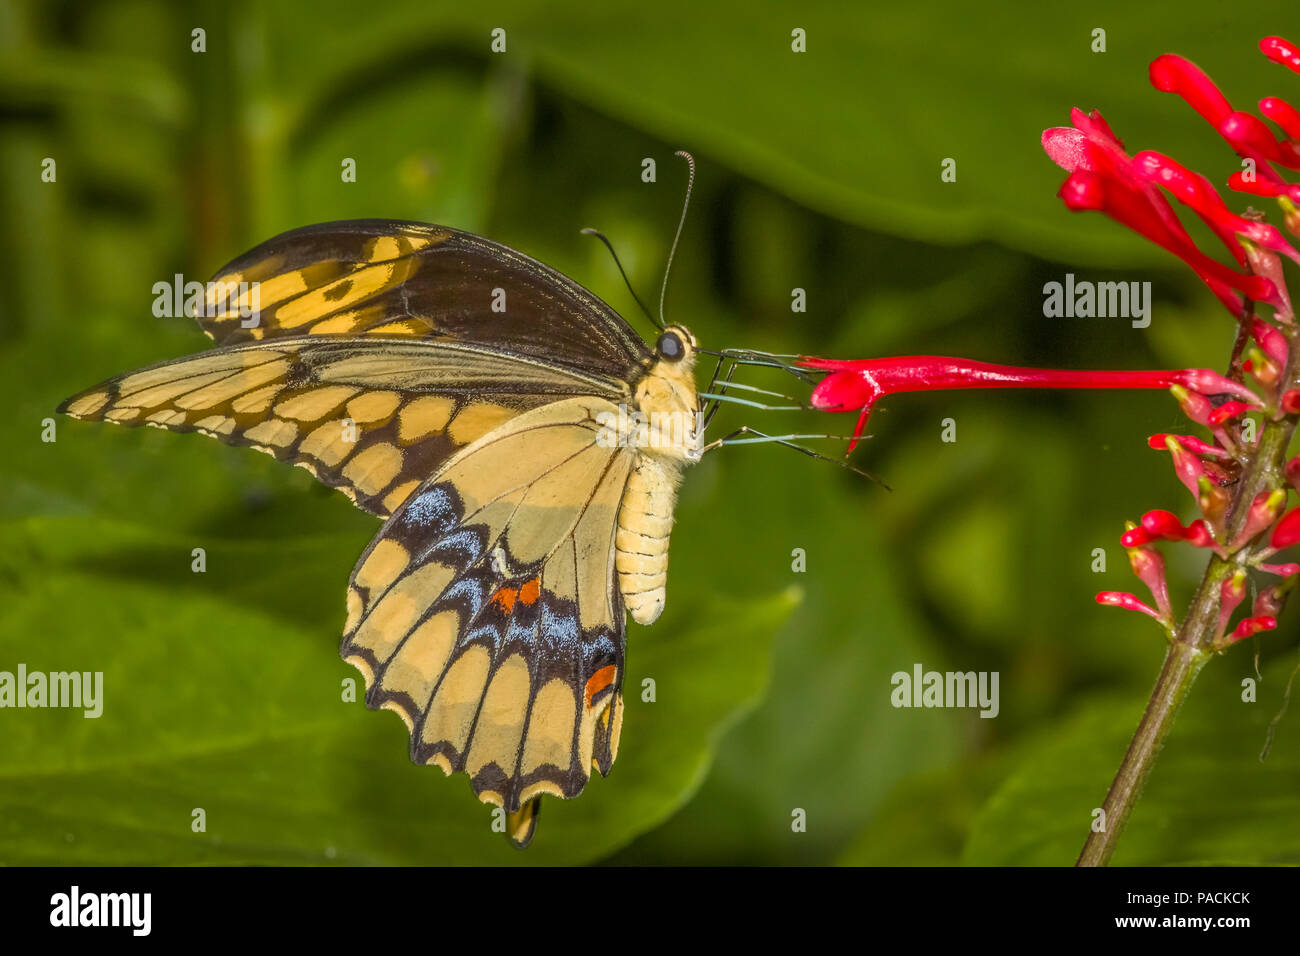 Gros plan du Swallowtai géant ( crespbontes ) Papilio papillon sur fleur rouge Banque D'Images